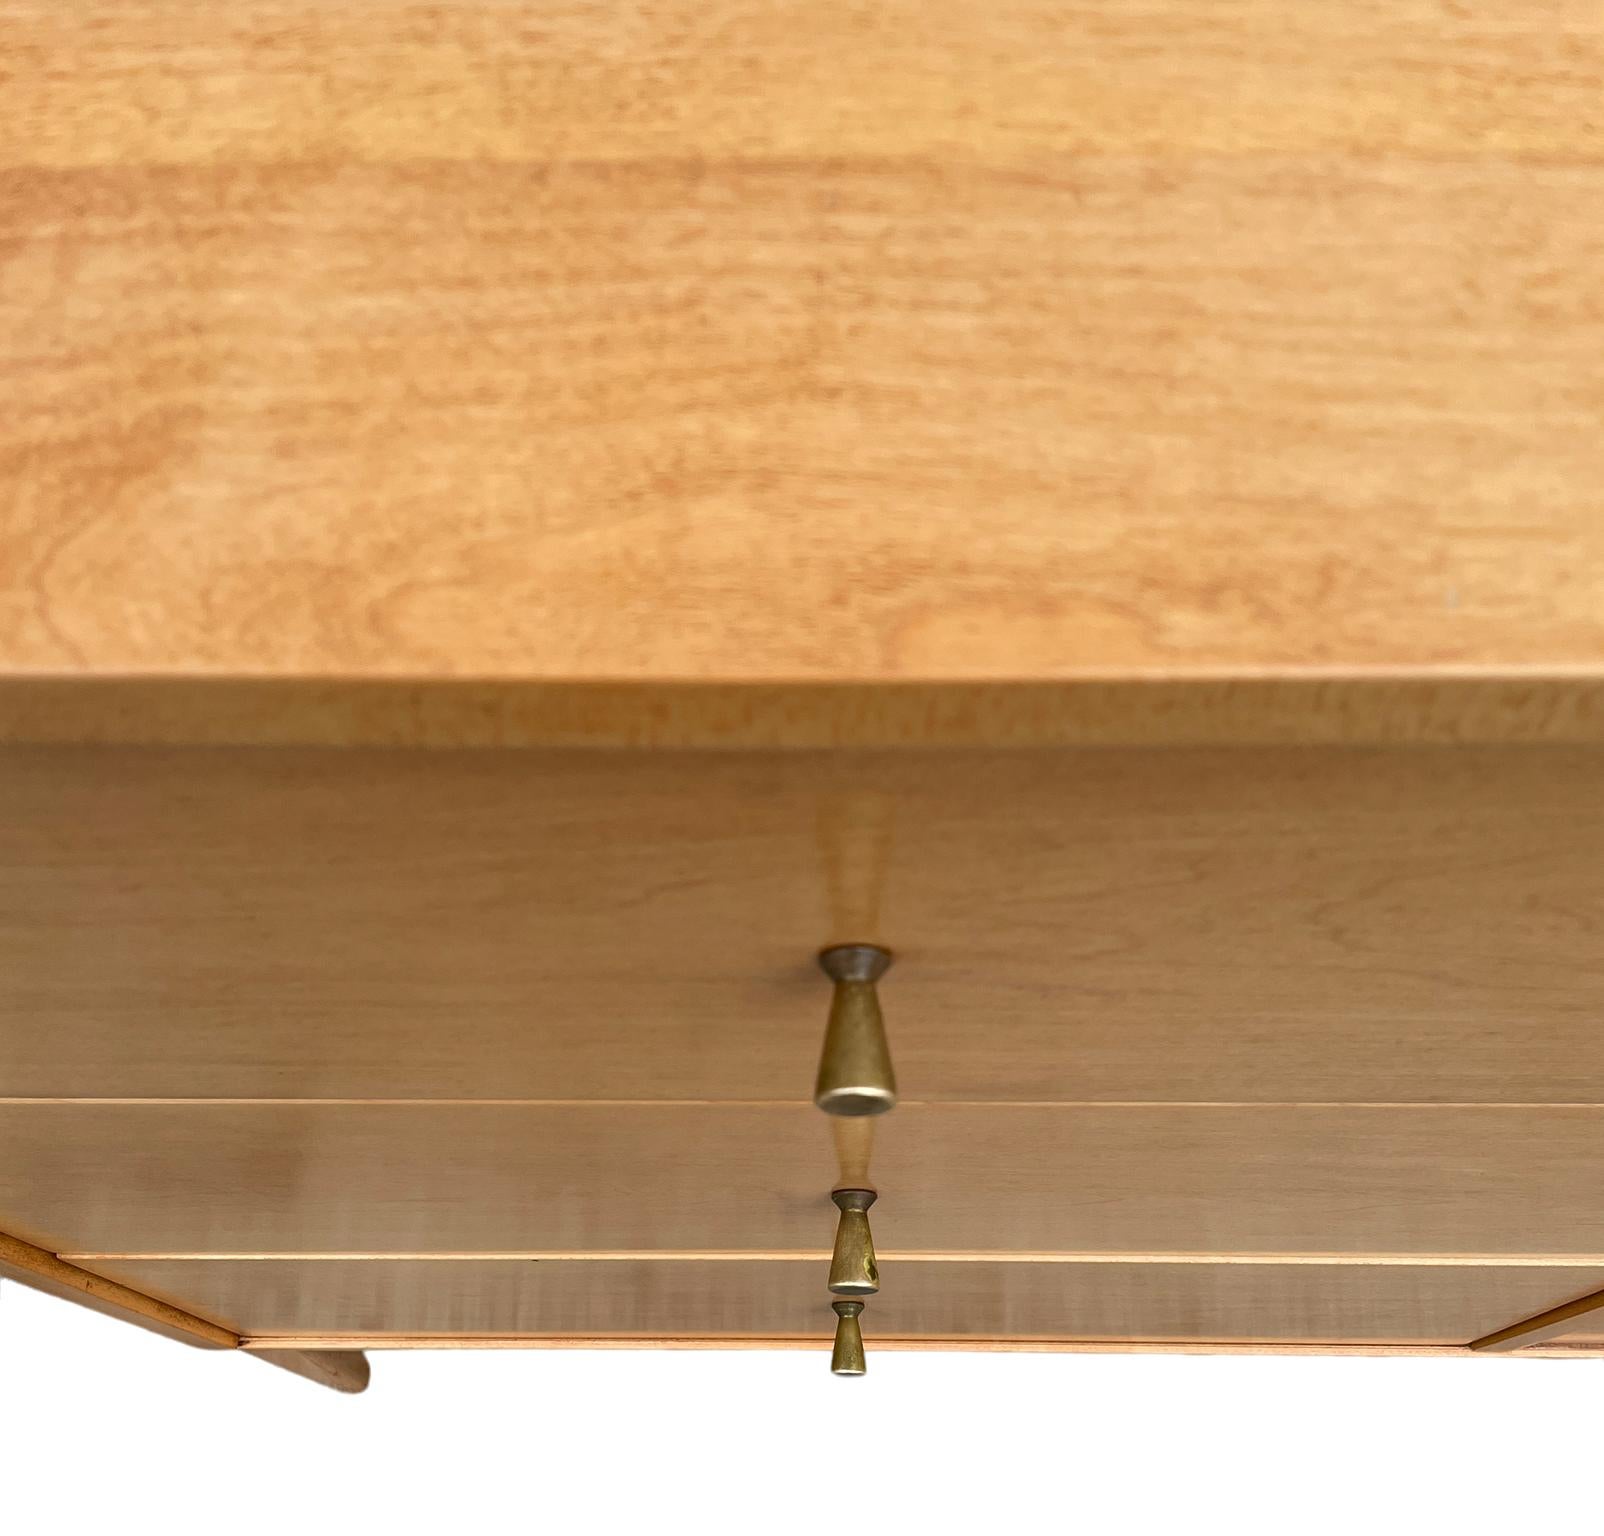 Woodwork Midcentury Paul McCobb 6 Drawer Cabinet Dresser Credenza Blonde Maple Brass